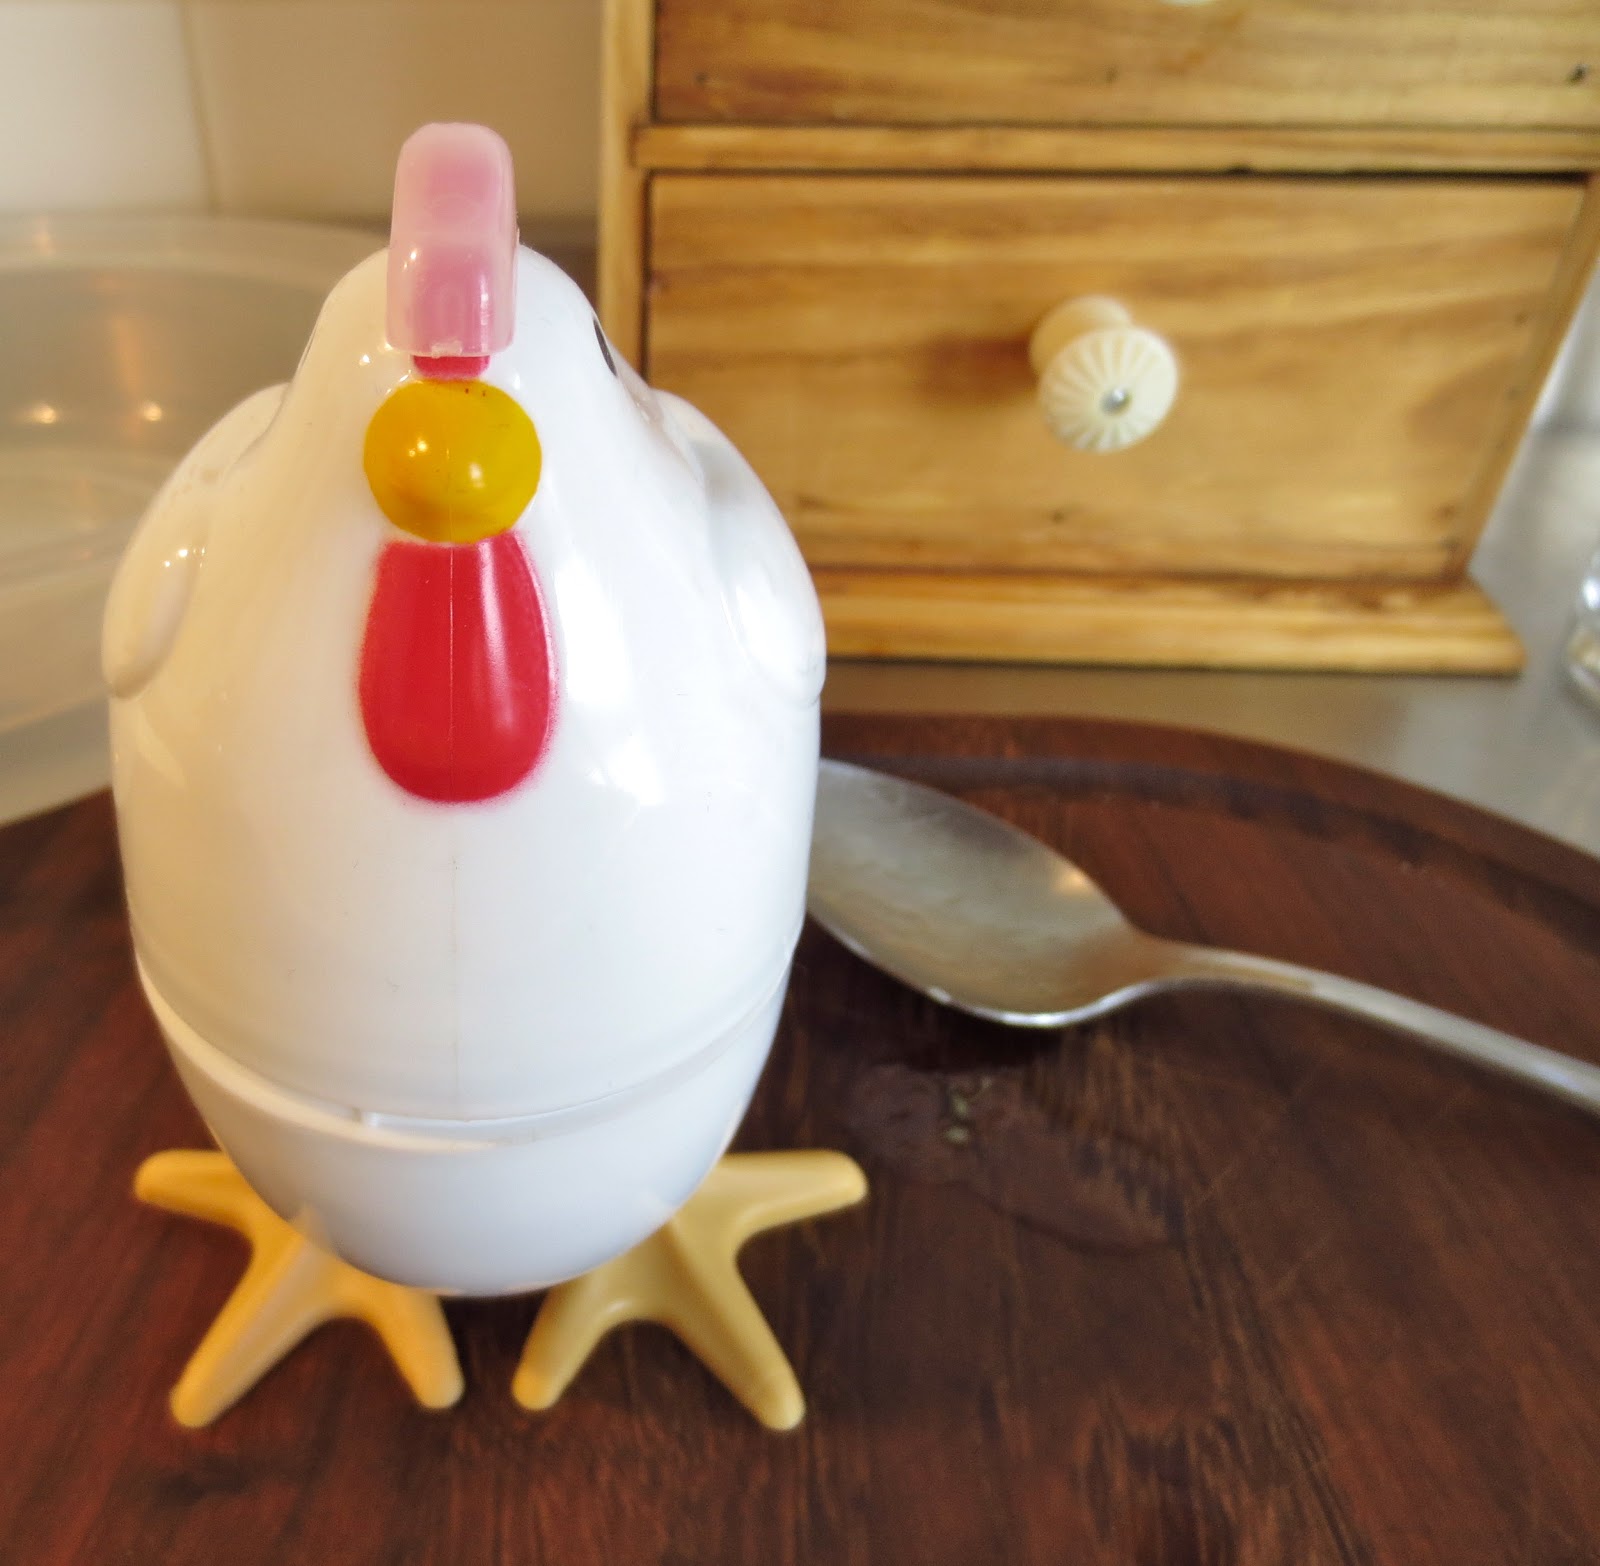 Mamuchi en la cocina: Como cocer un huevo con cáscara en microondas